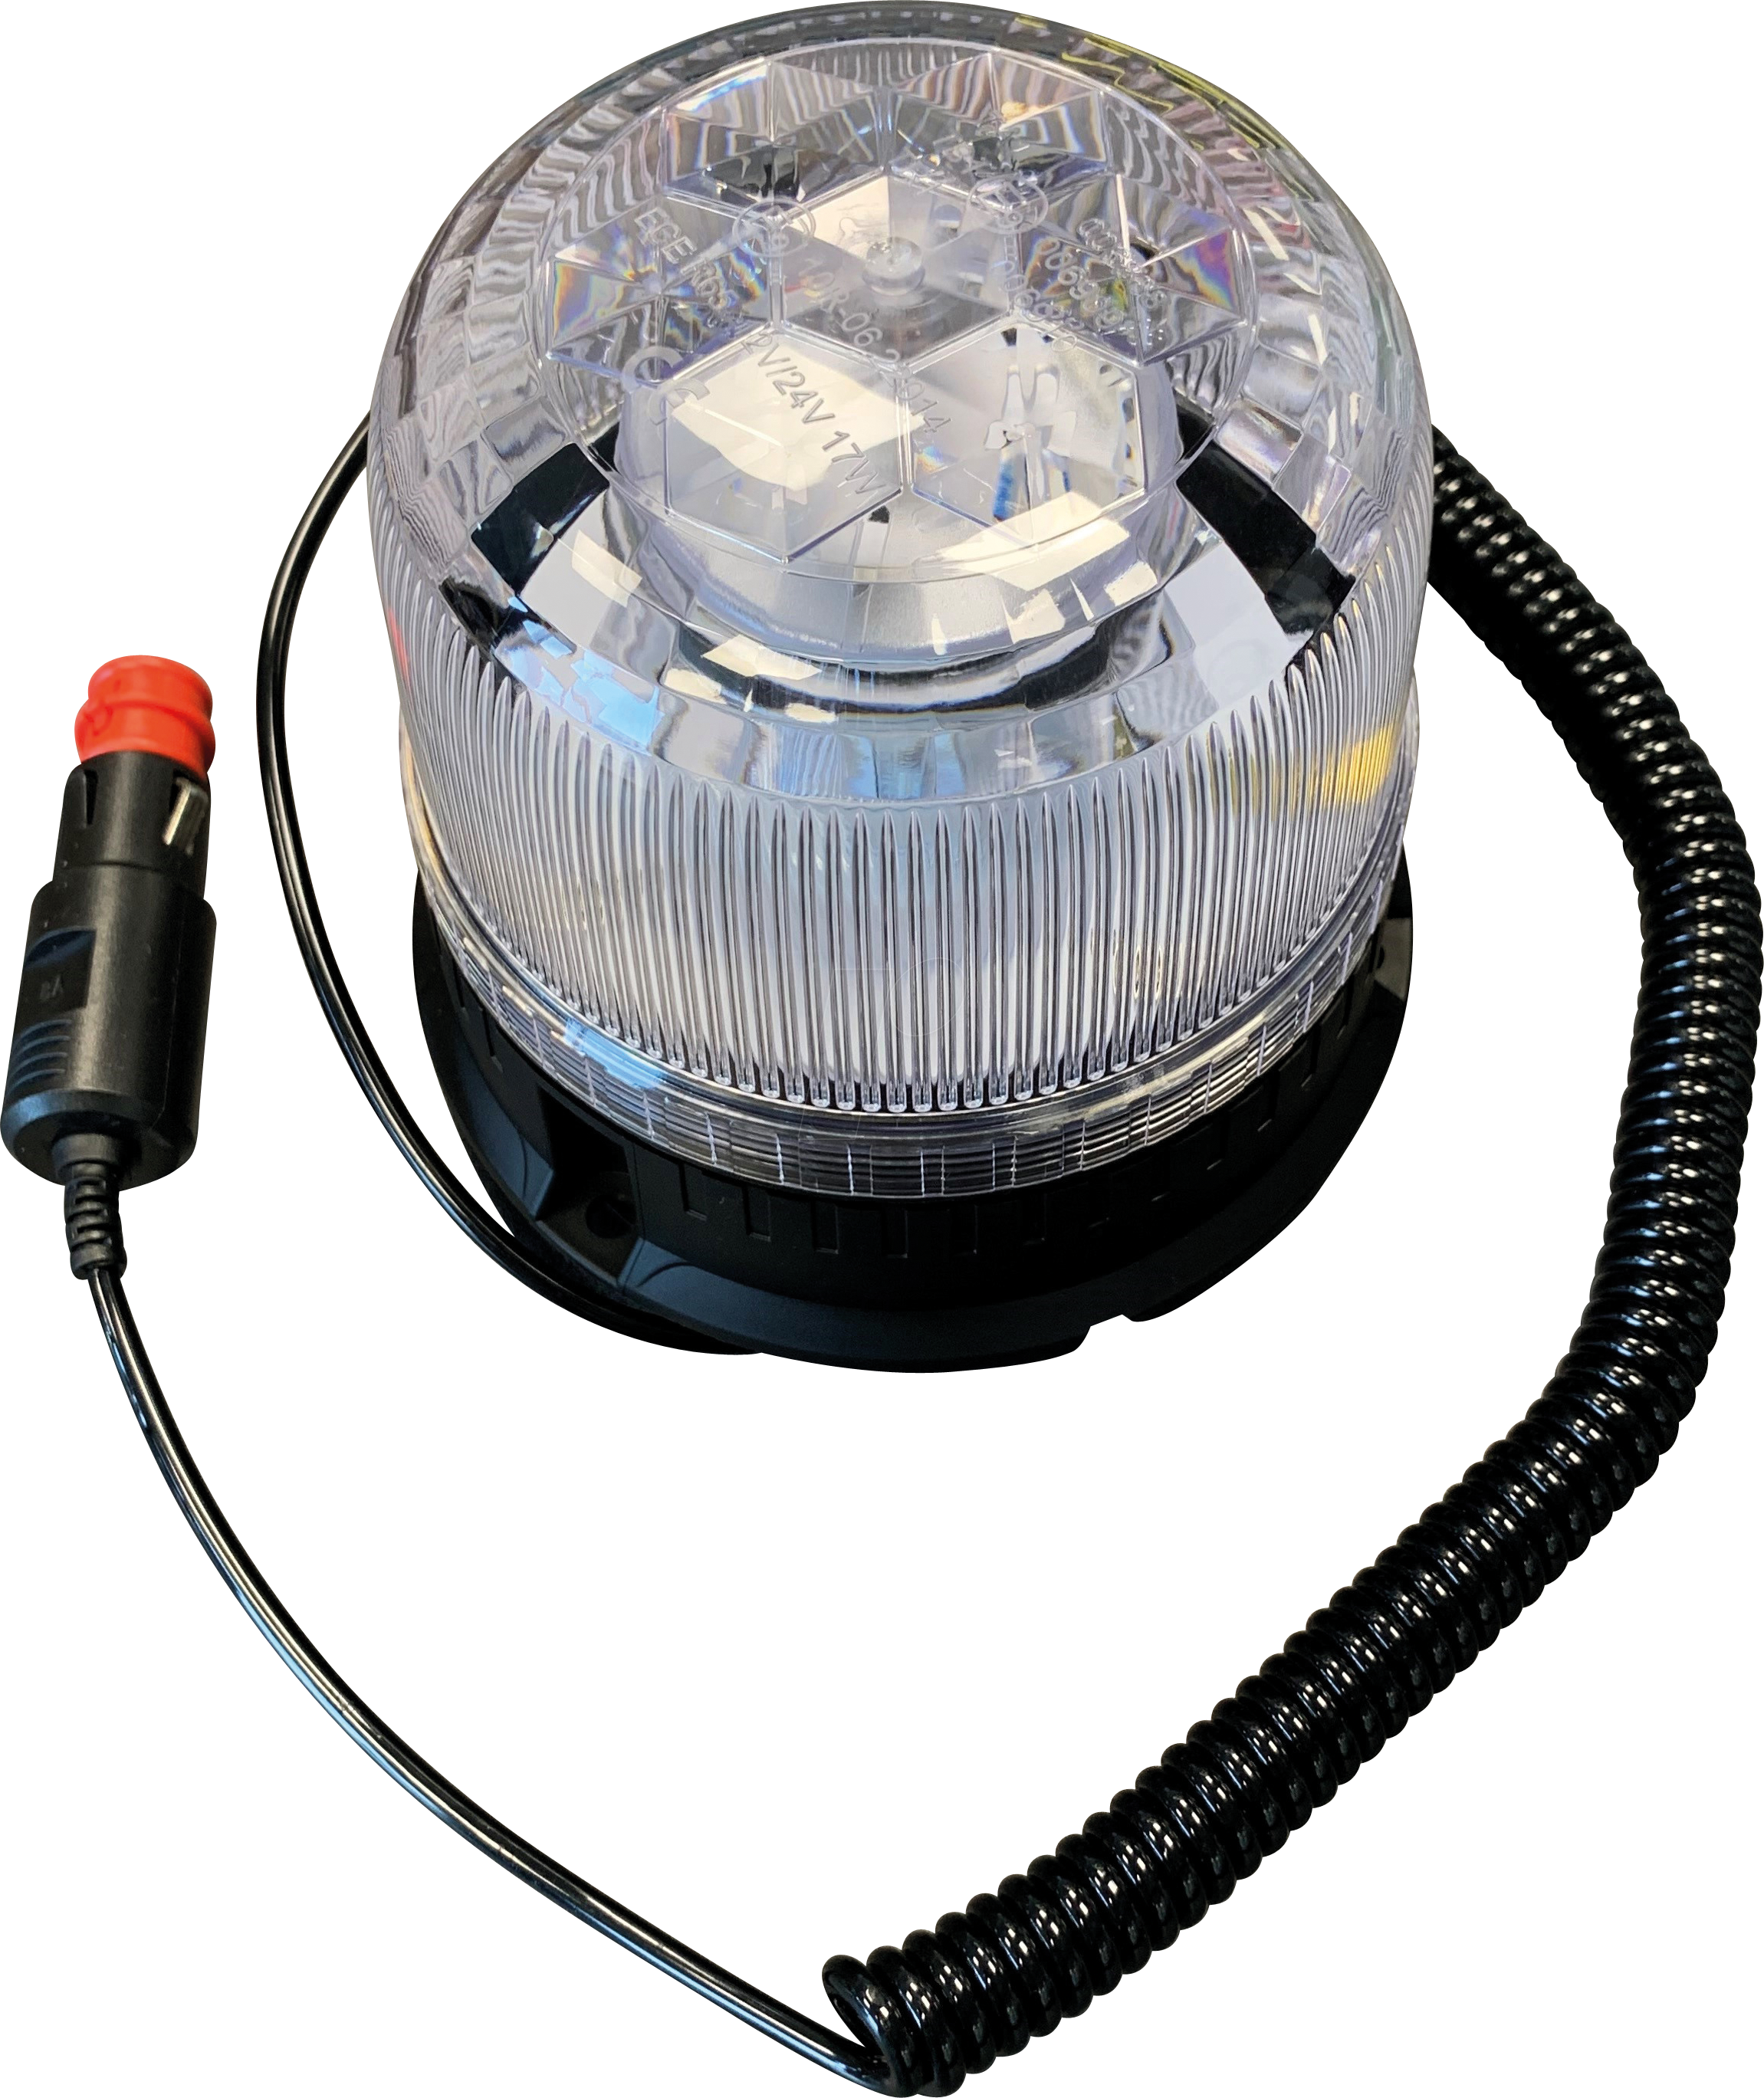 Gyrophare LED Bleu 12-24 Volt